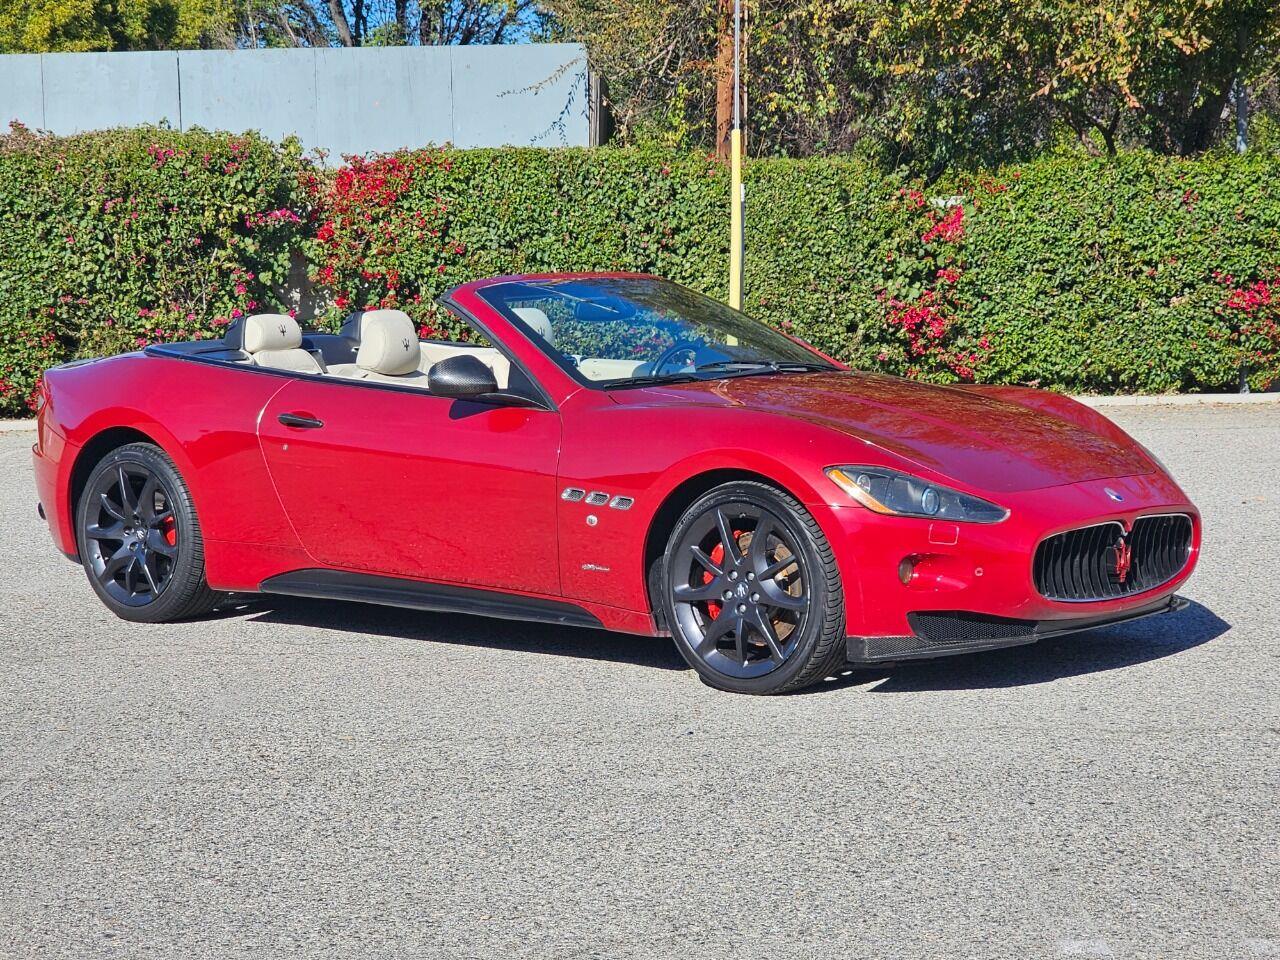 For Sale: 2012 Maserati GranTurismo in Woodland Hills, California for sale in Woodland Hills, CA